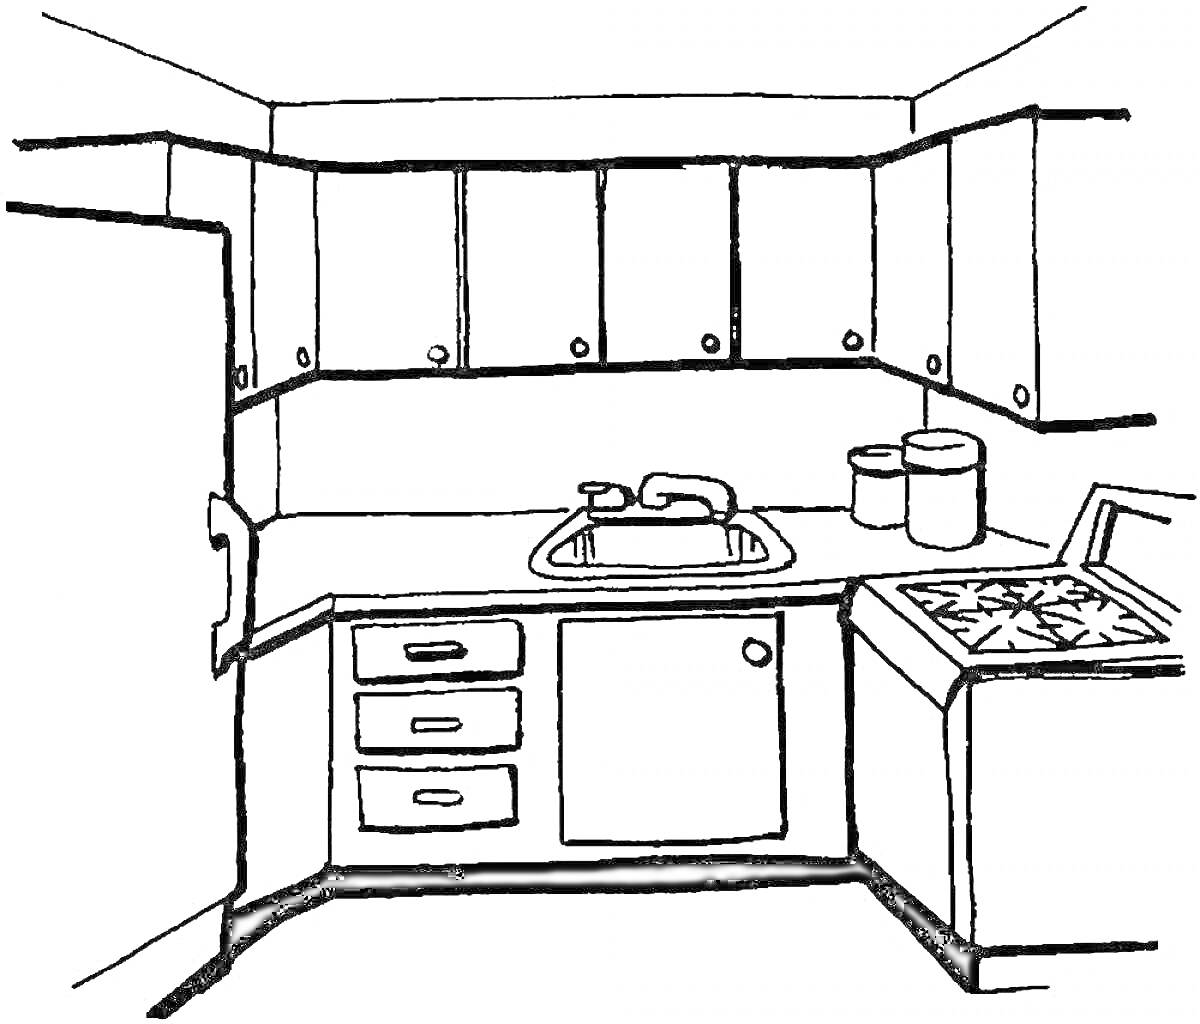 Раскраска Кухонная мебель с шкафами, раковиной, плитой и банками для хранения